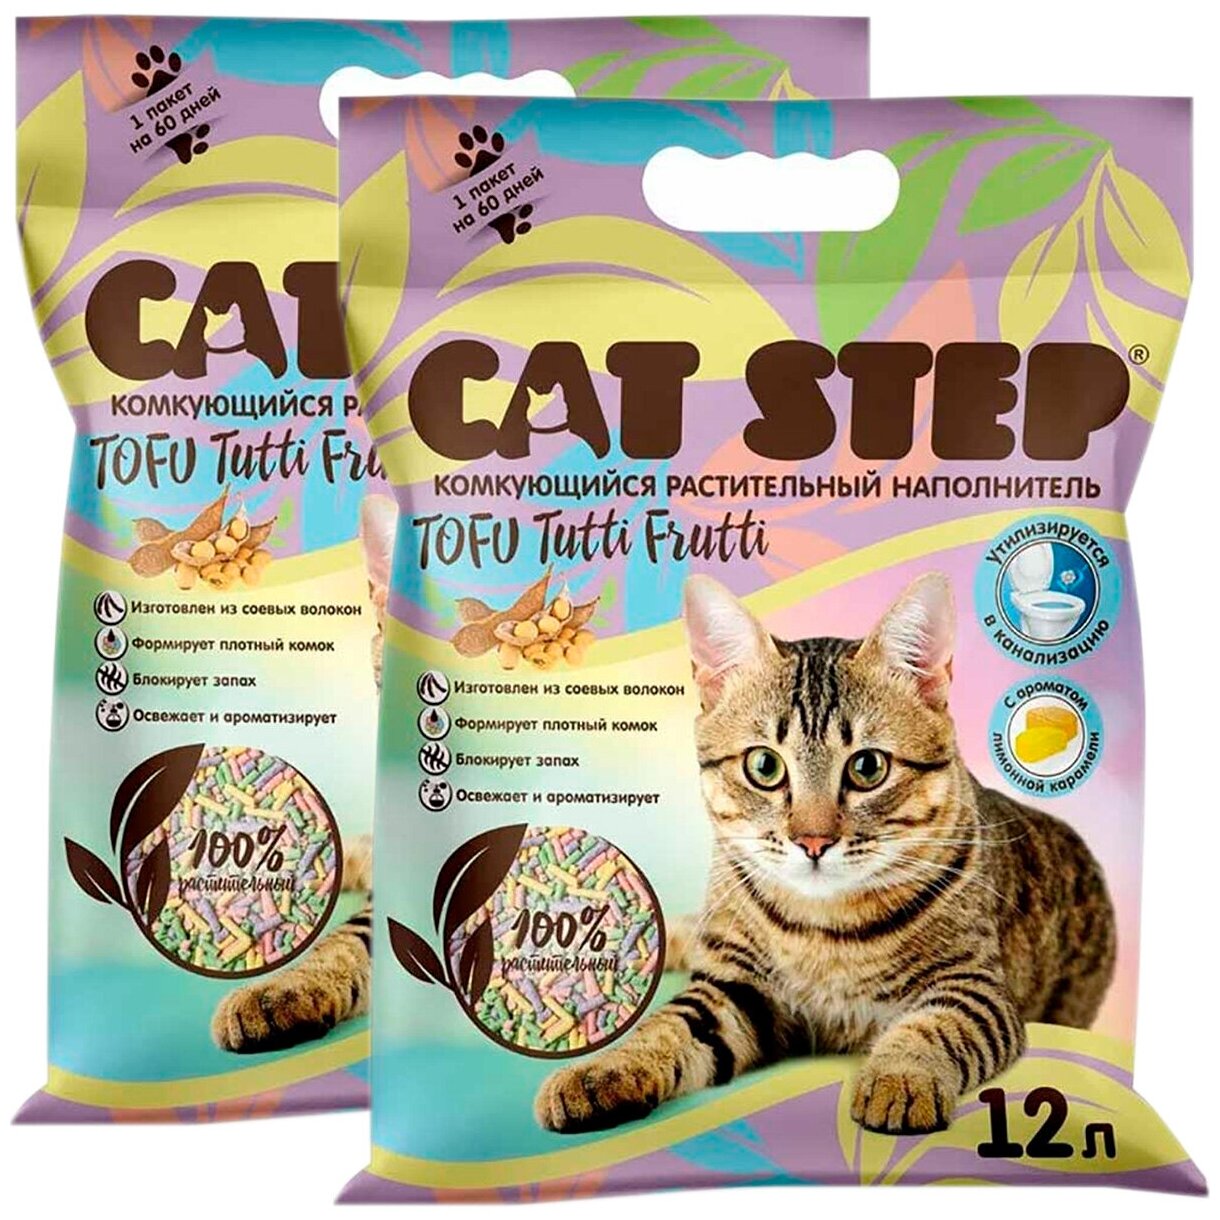 CAT STEP TOFU TUTTI FRUTTI наполнитель комкующийся растительный для туалета кошек (12 + 12 л)